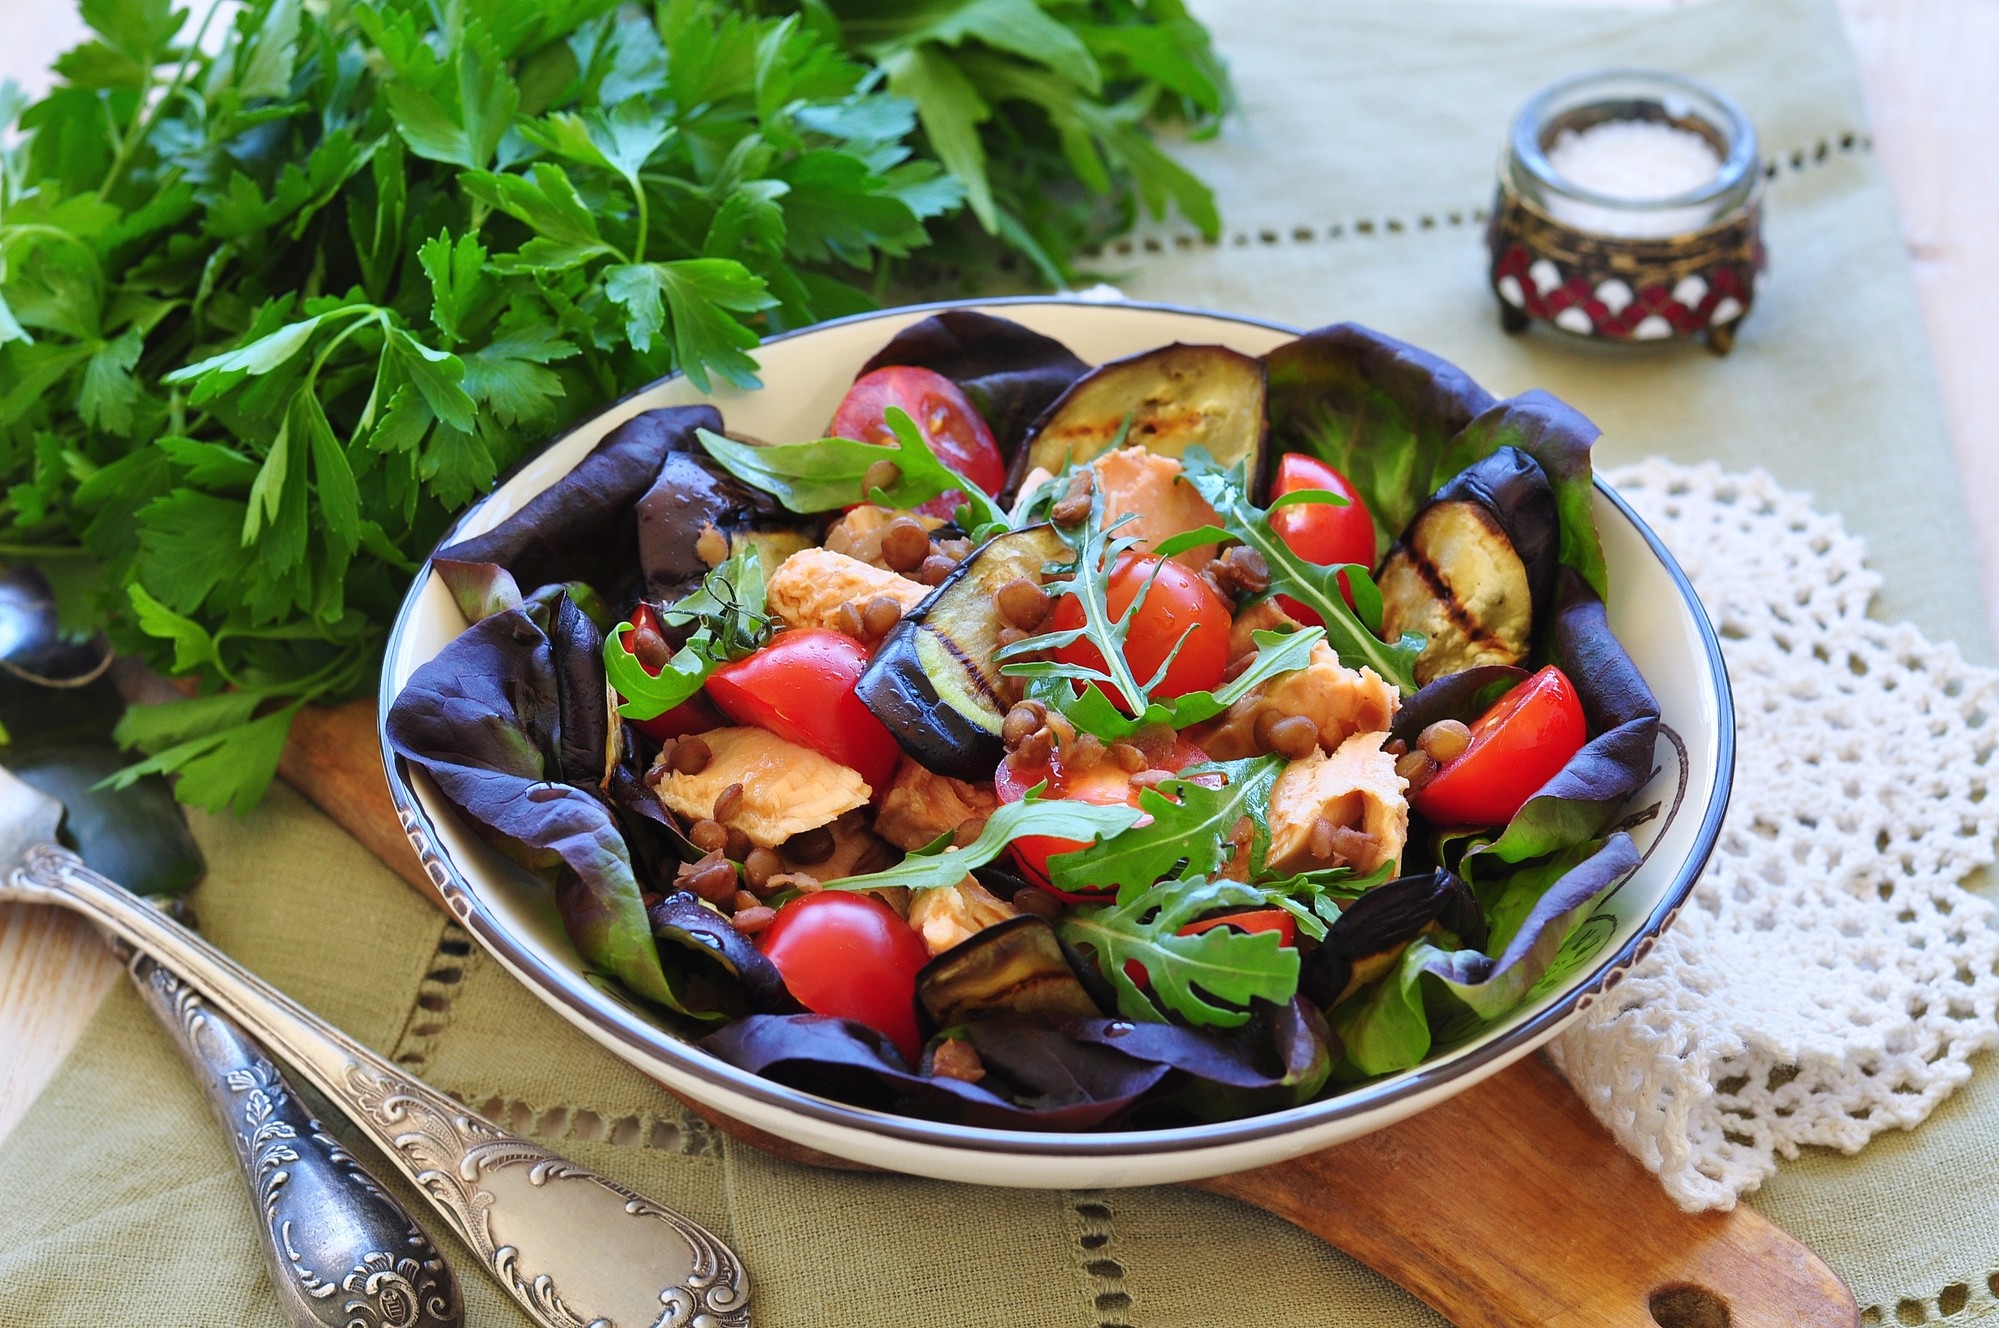 Армянский салат из печеных овощей: рецепт с фото